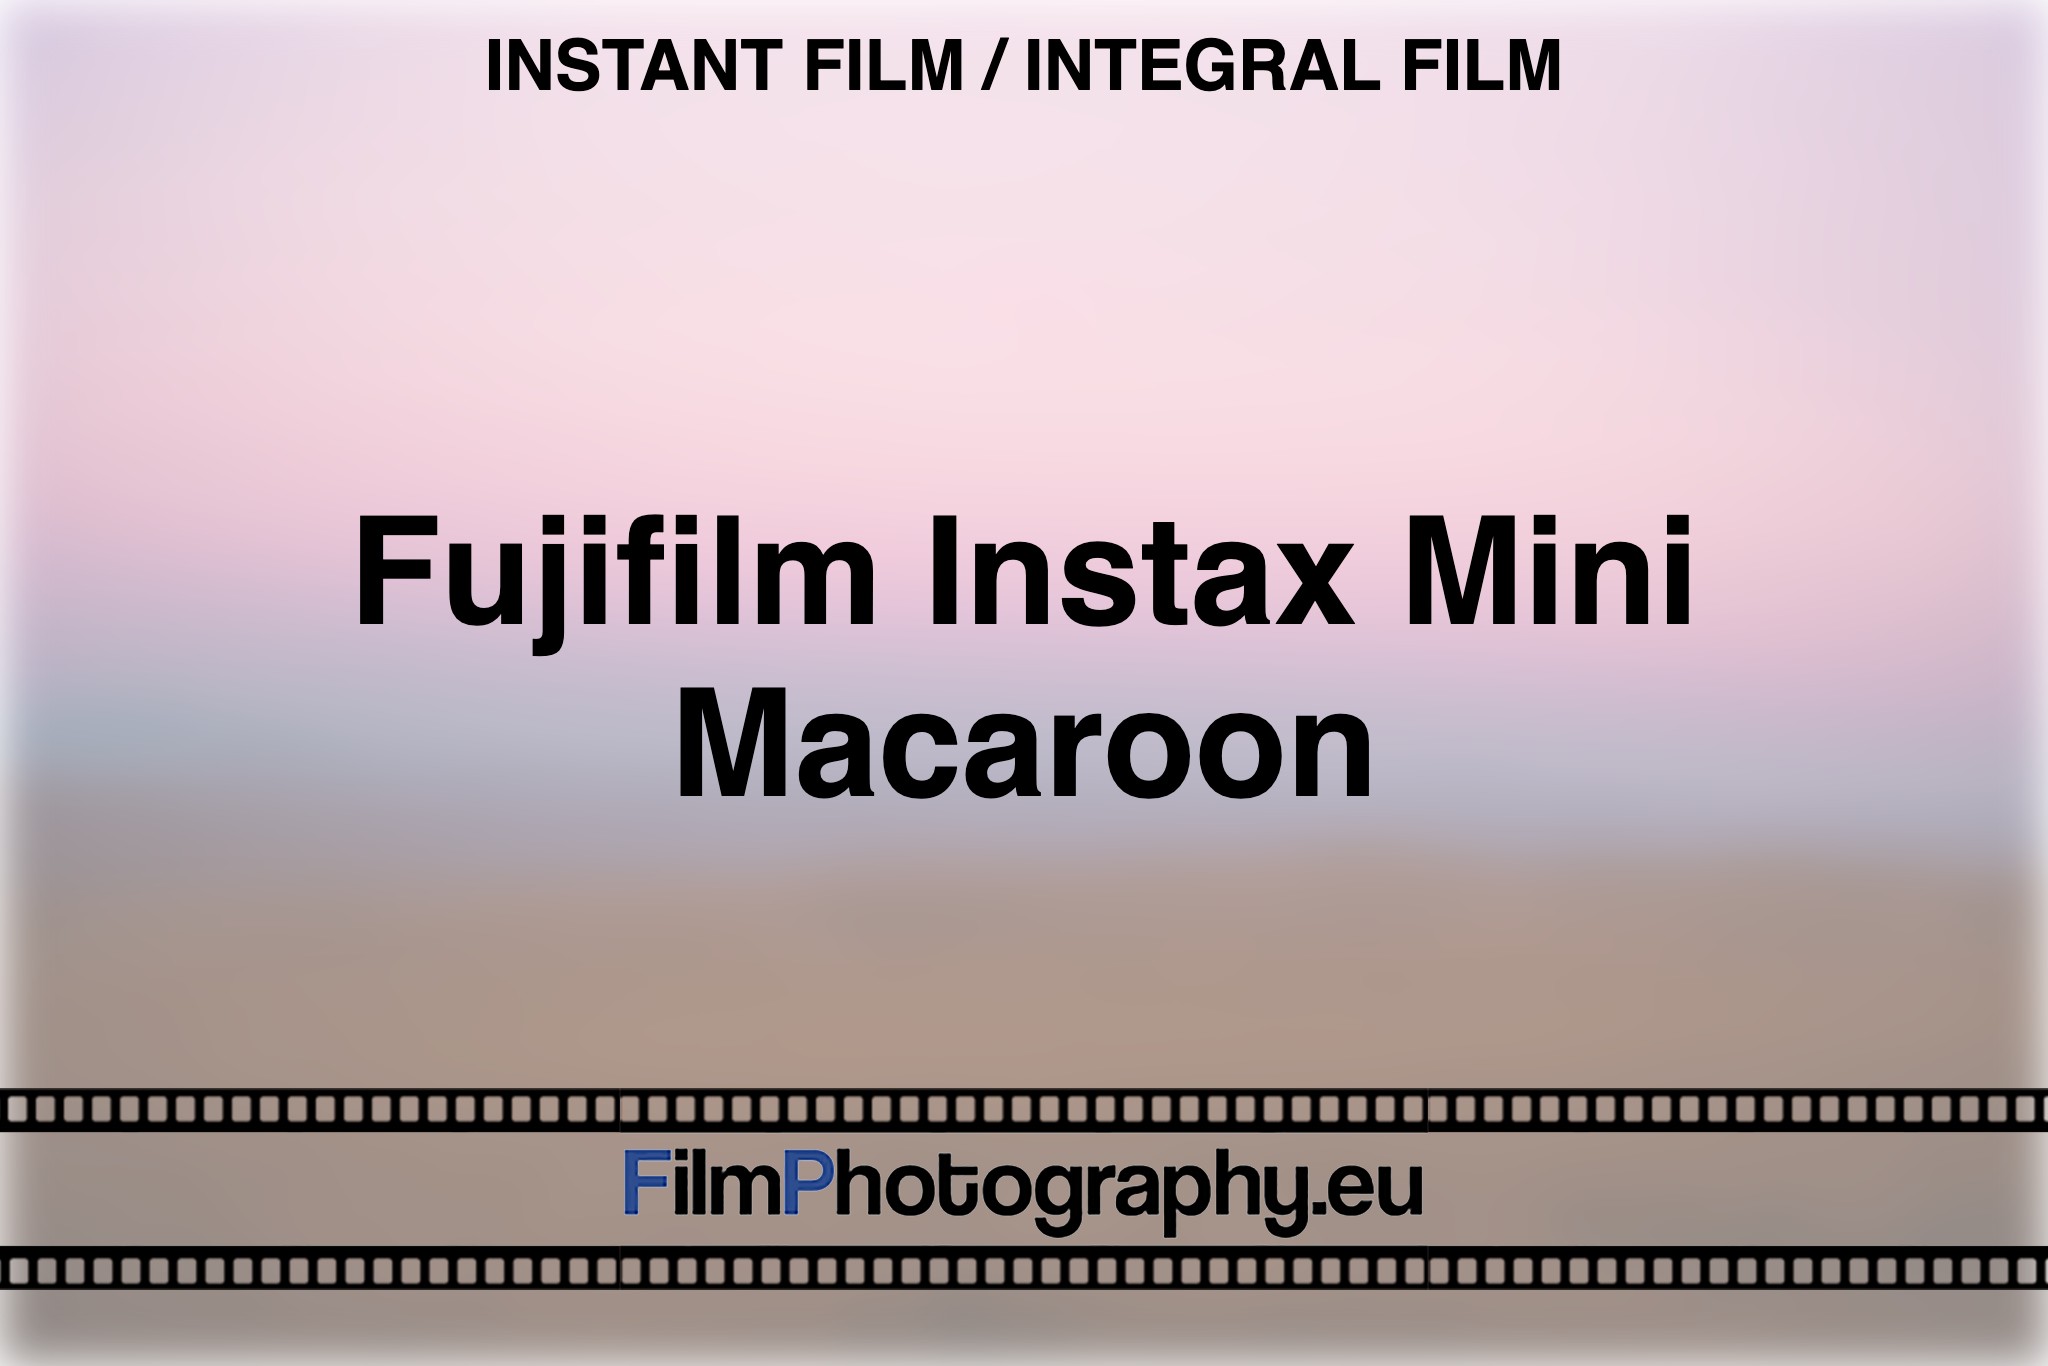 fujifilm-instax-mini-macaroon-instant-film-integral-film-bnv